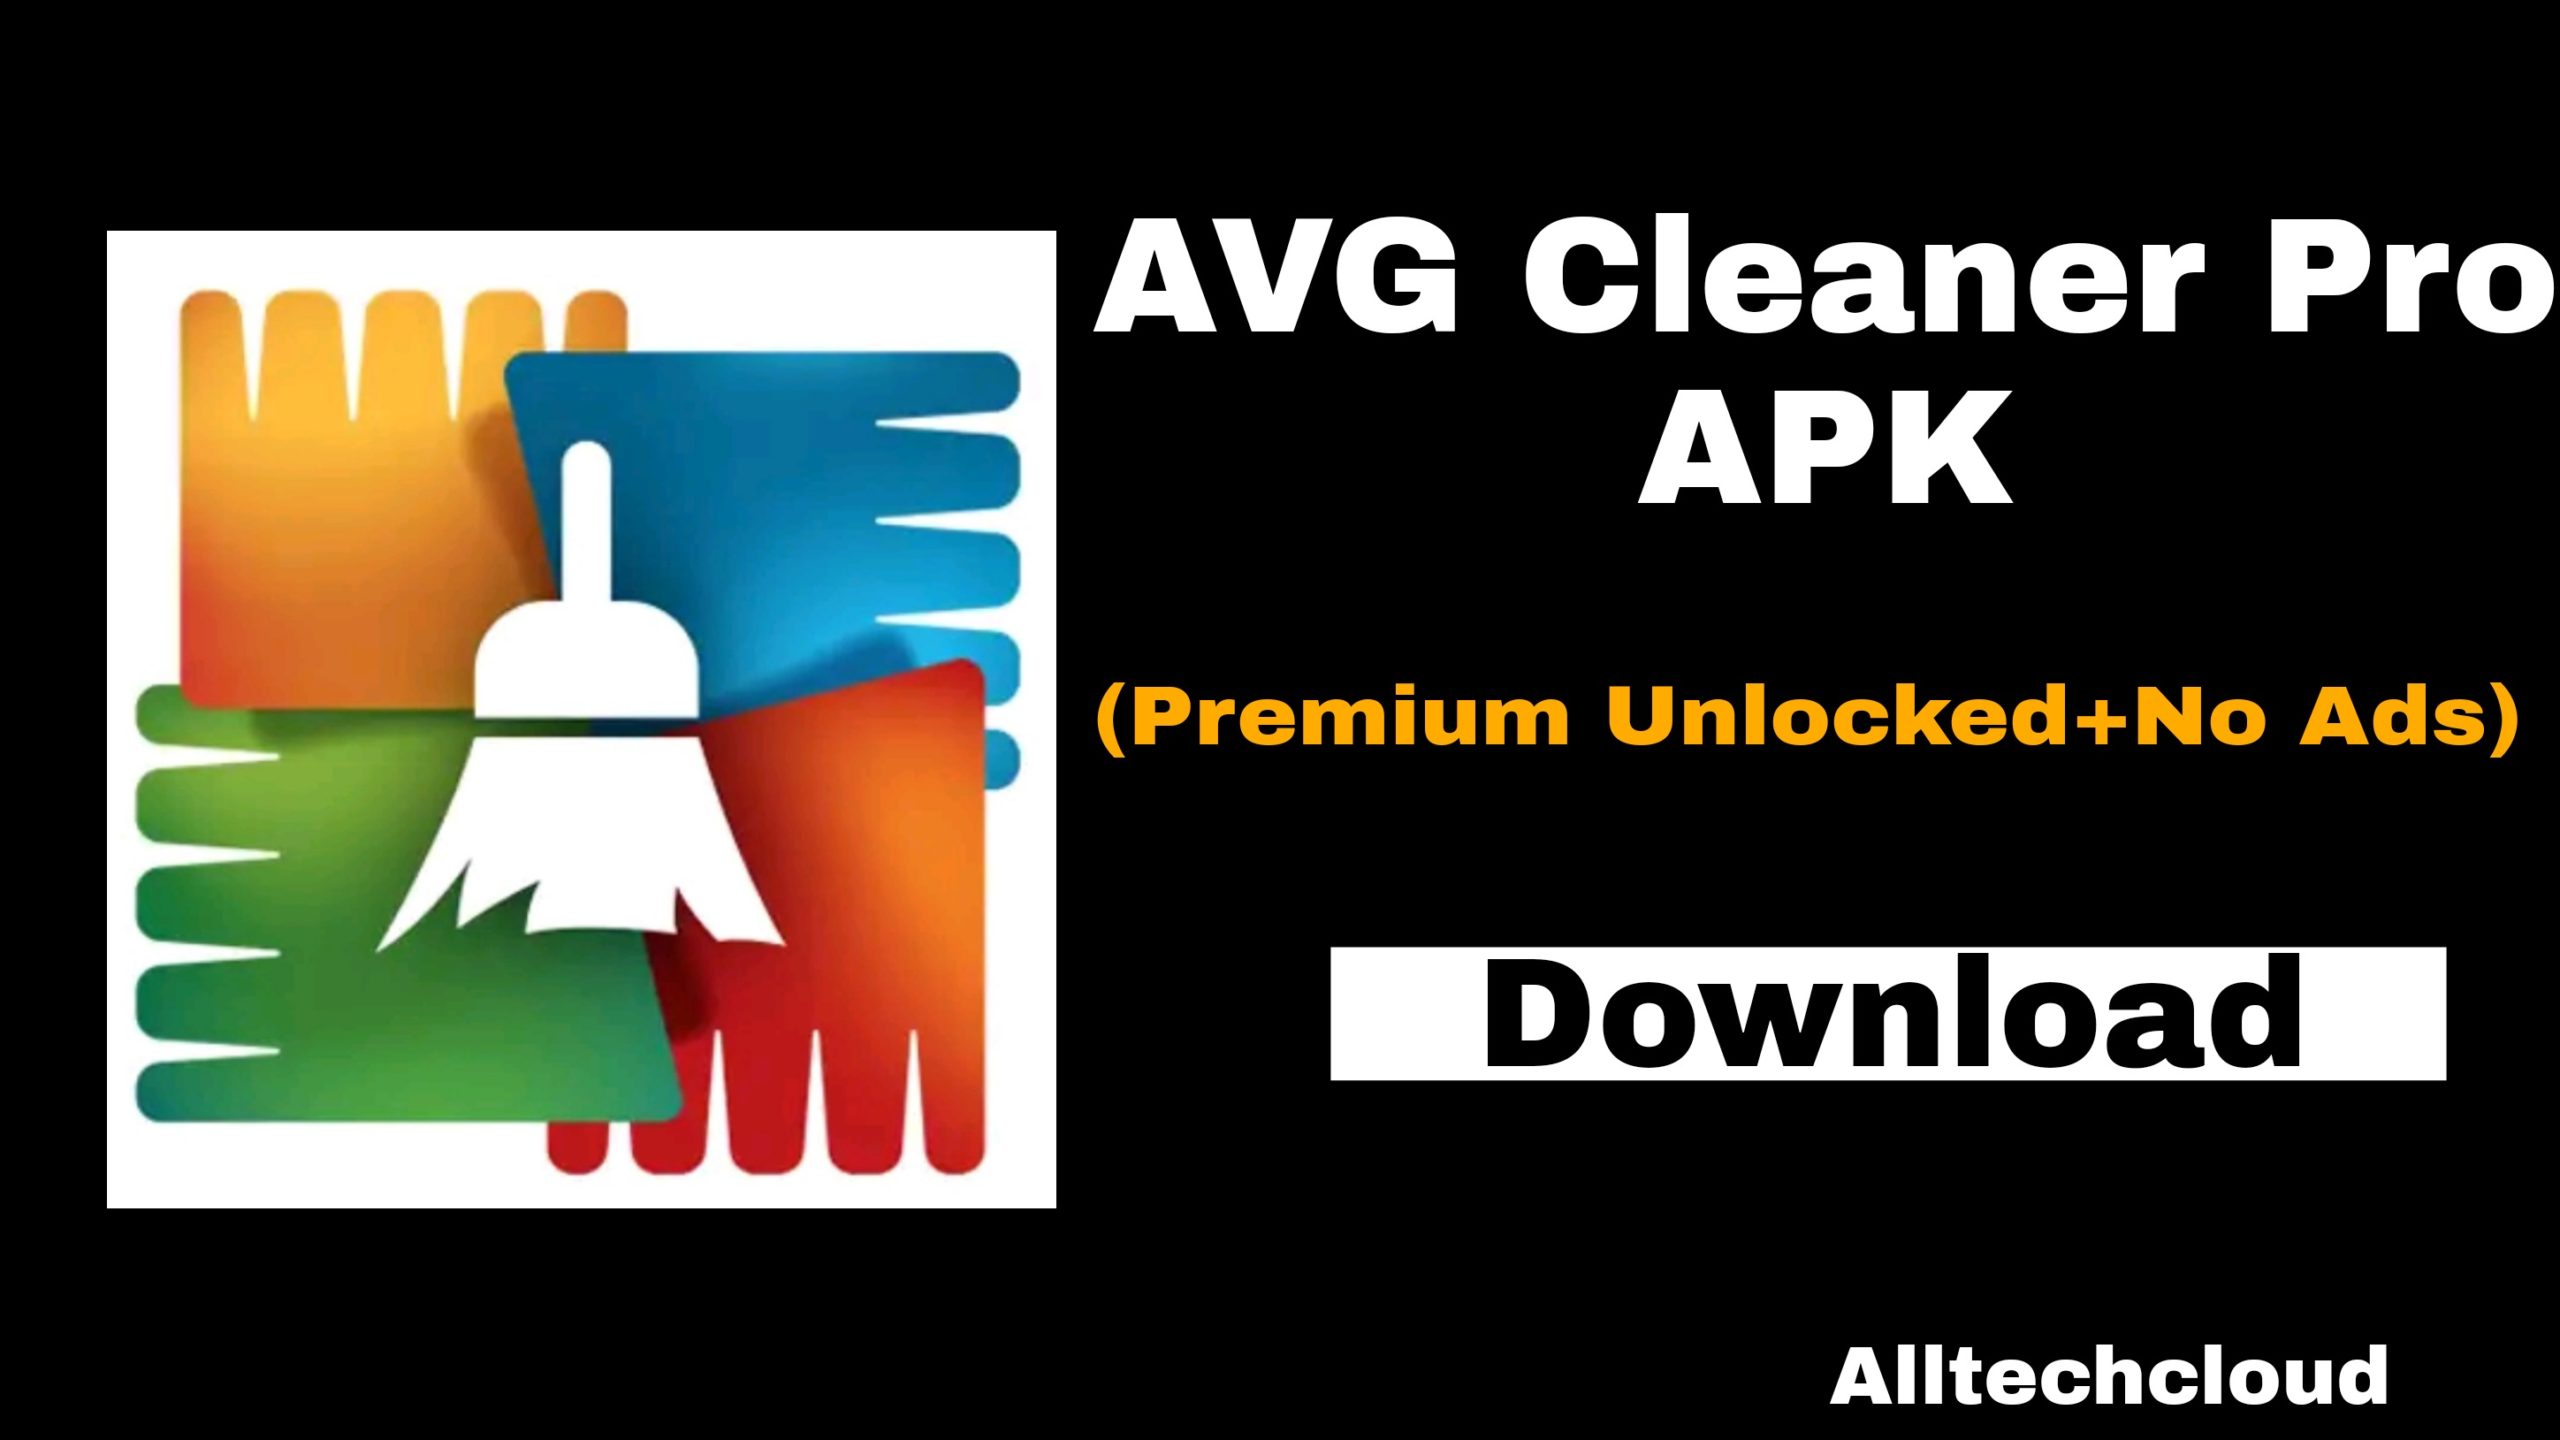 avg cleaner pro apk full free download